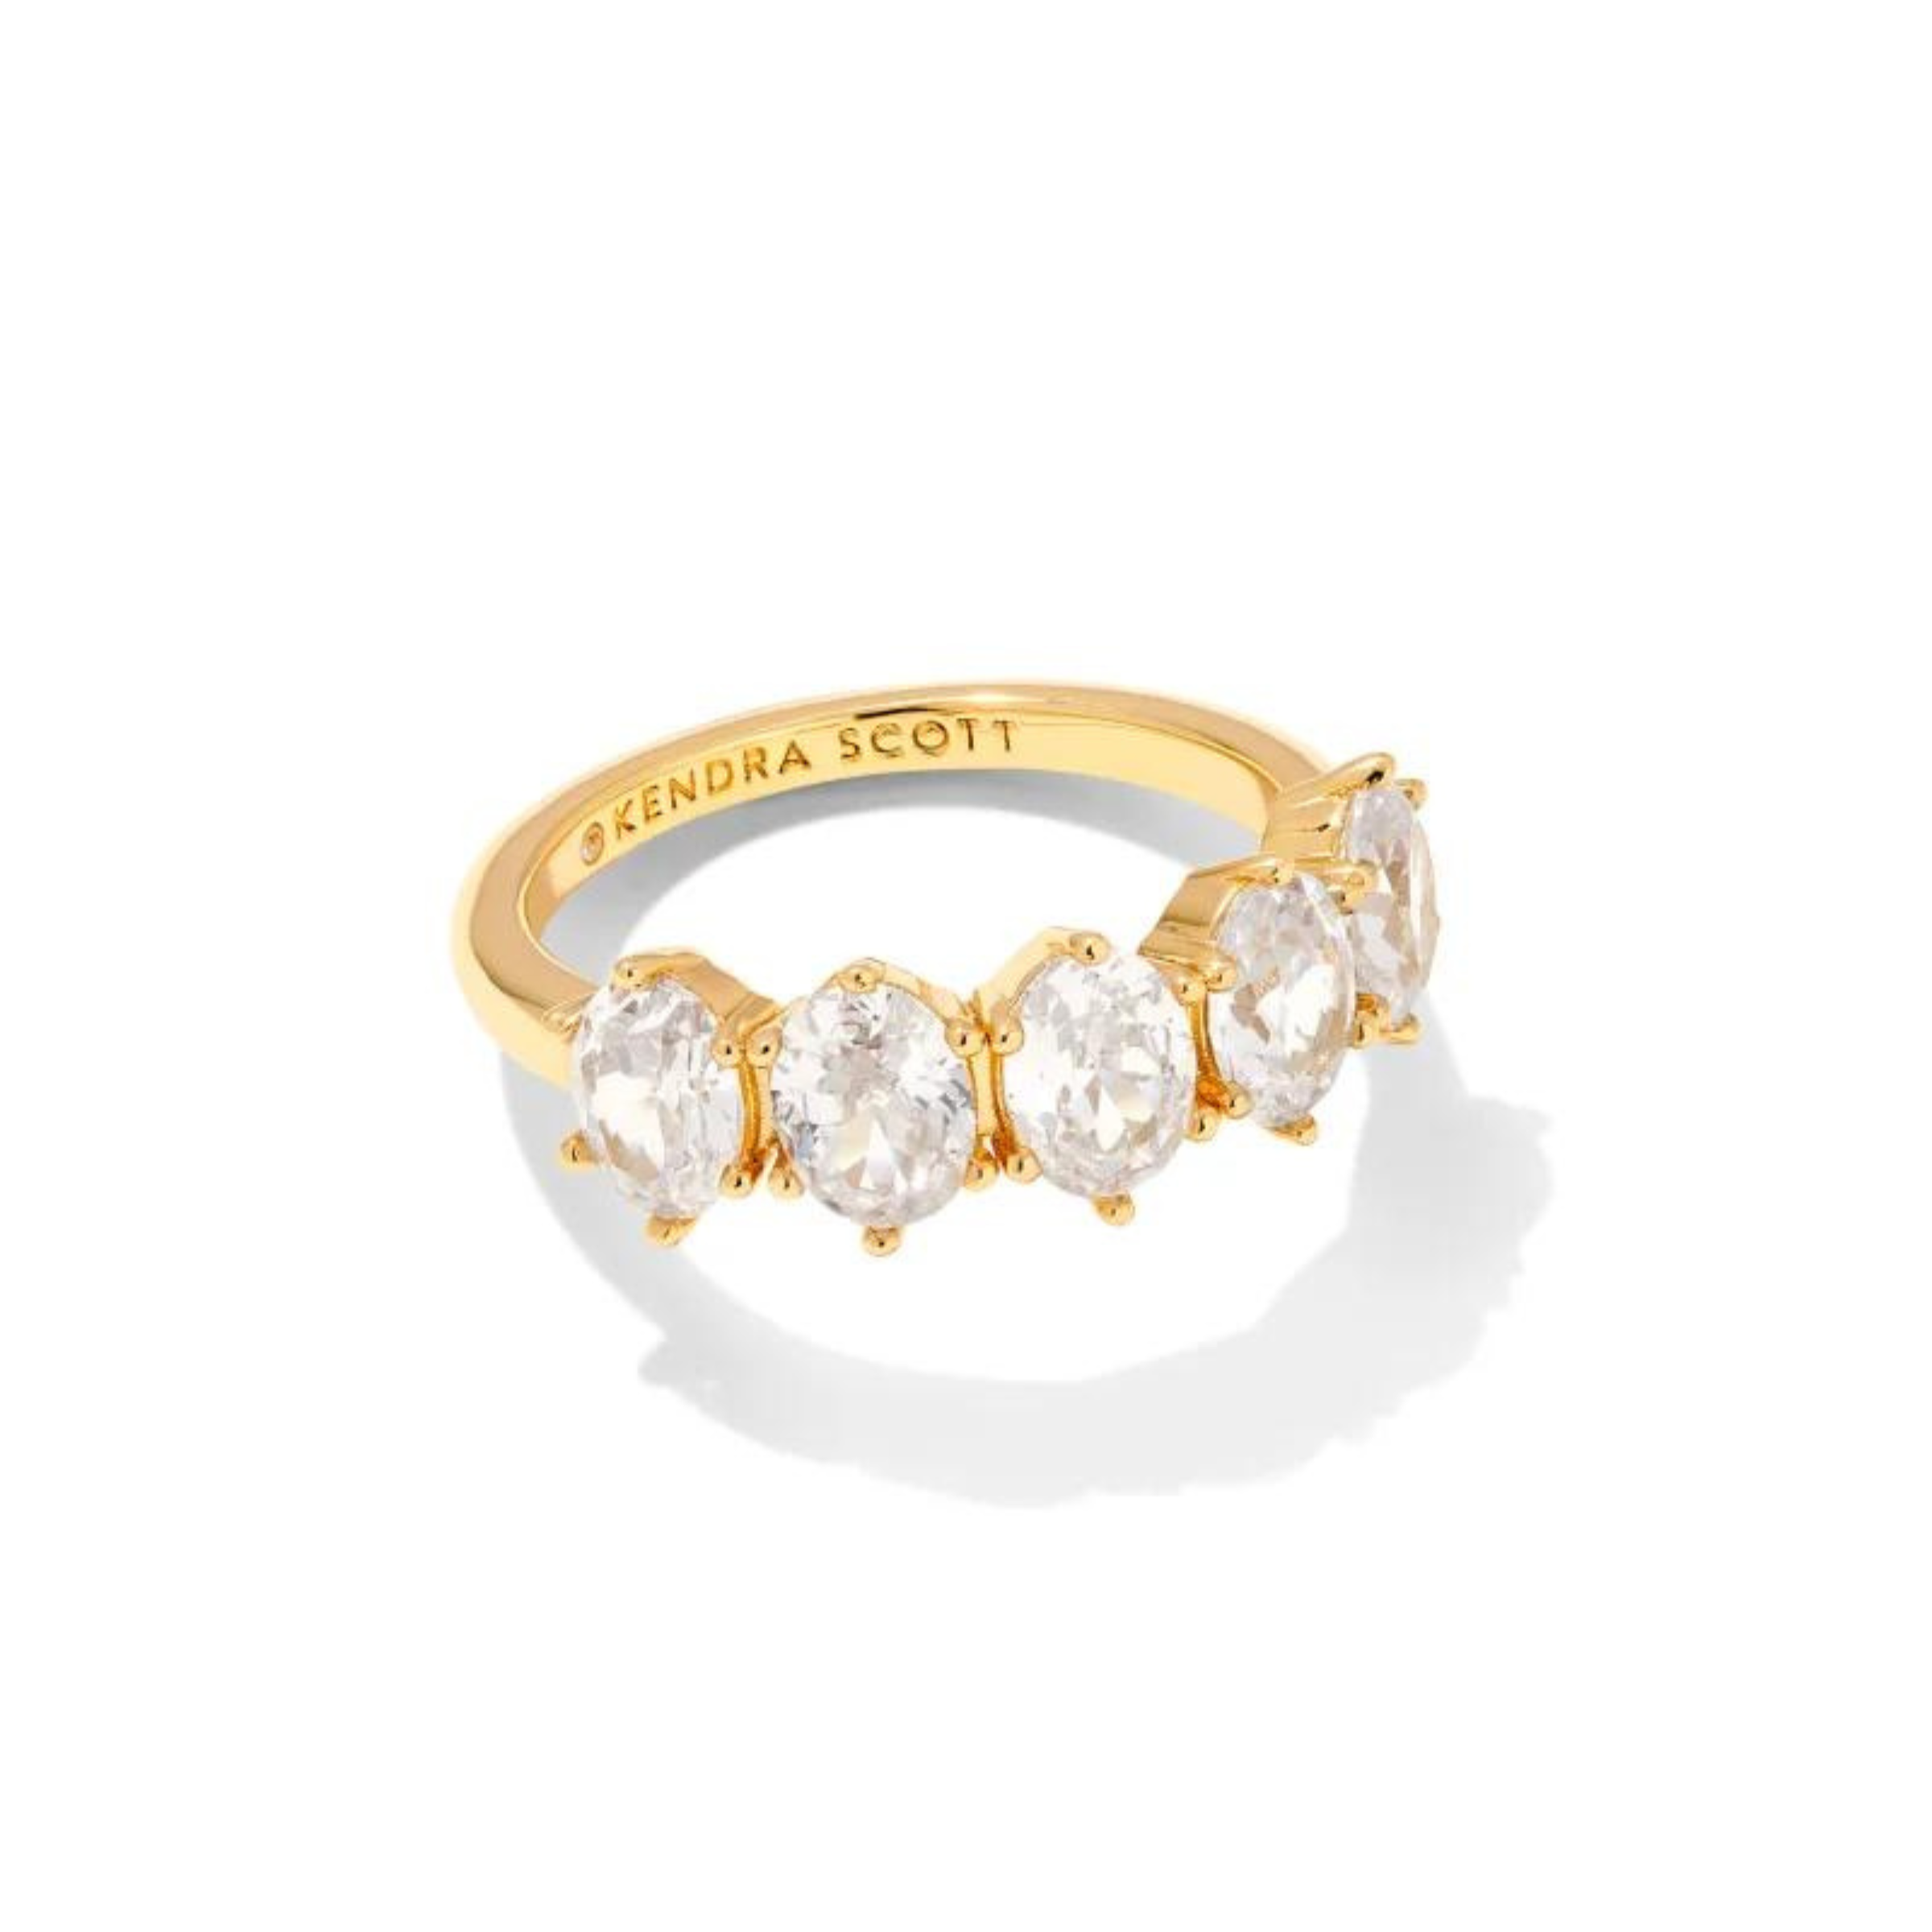 Cailin Gold Crystal Hoop Earrings in White Crystal